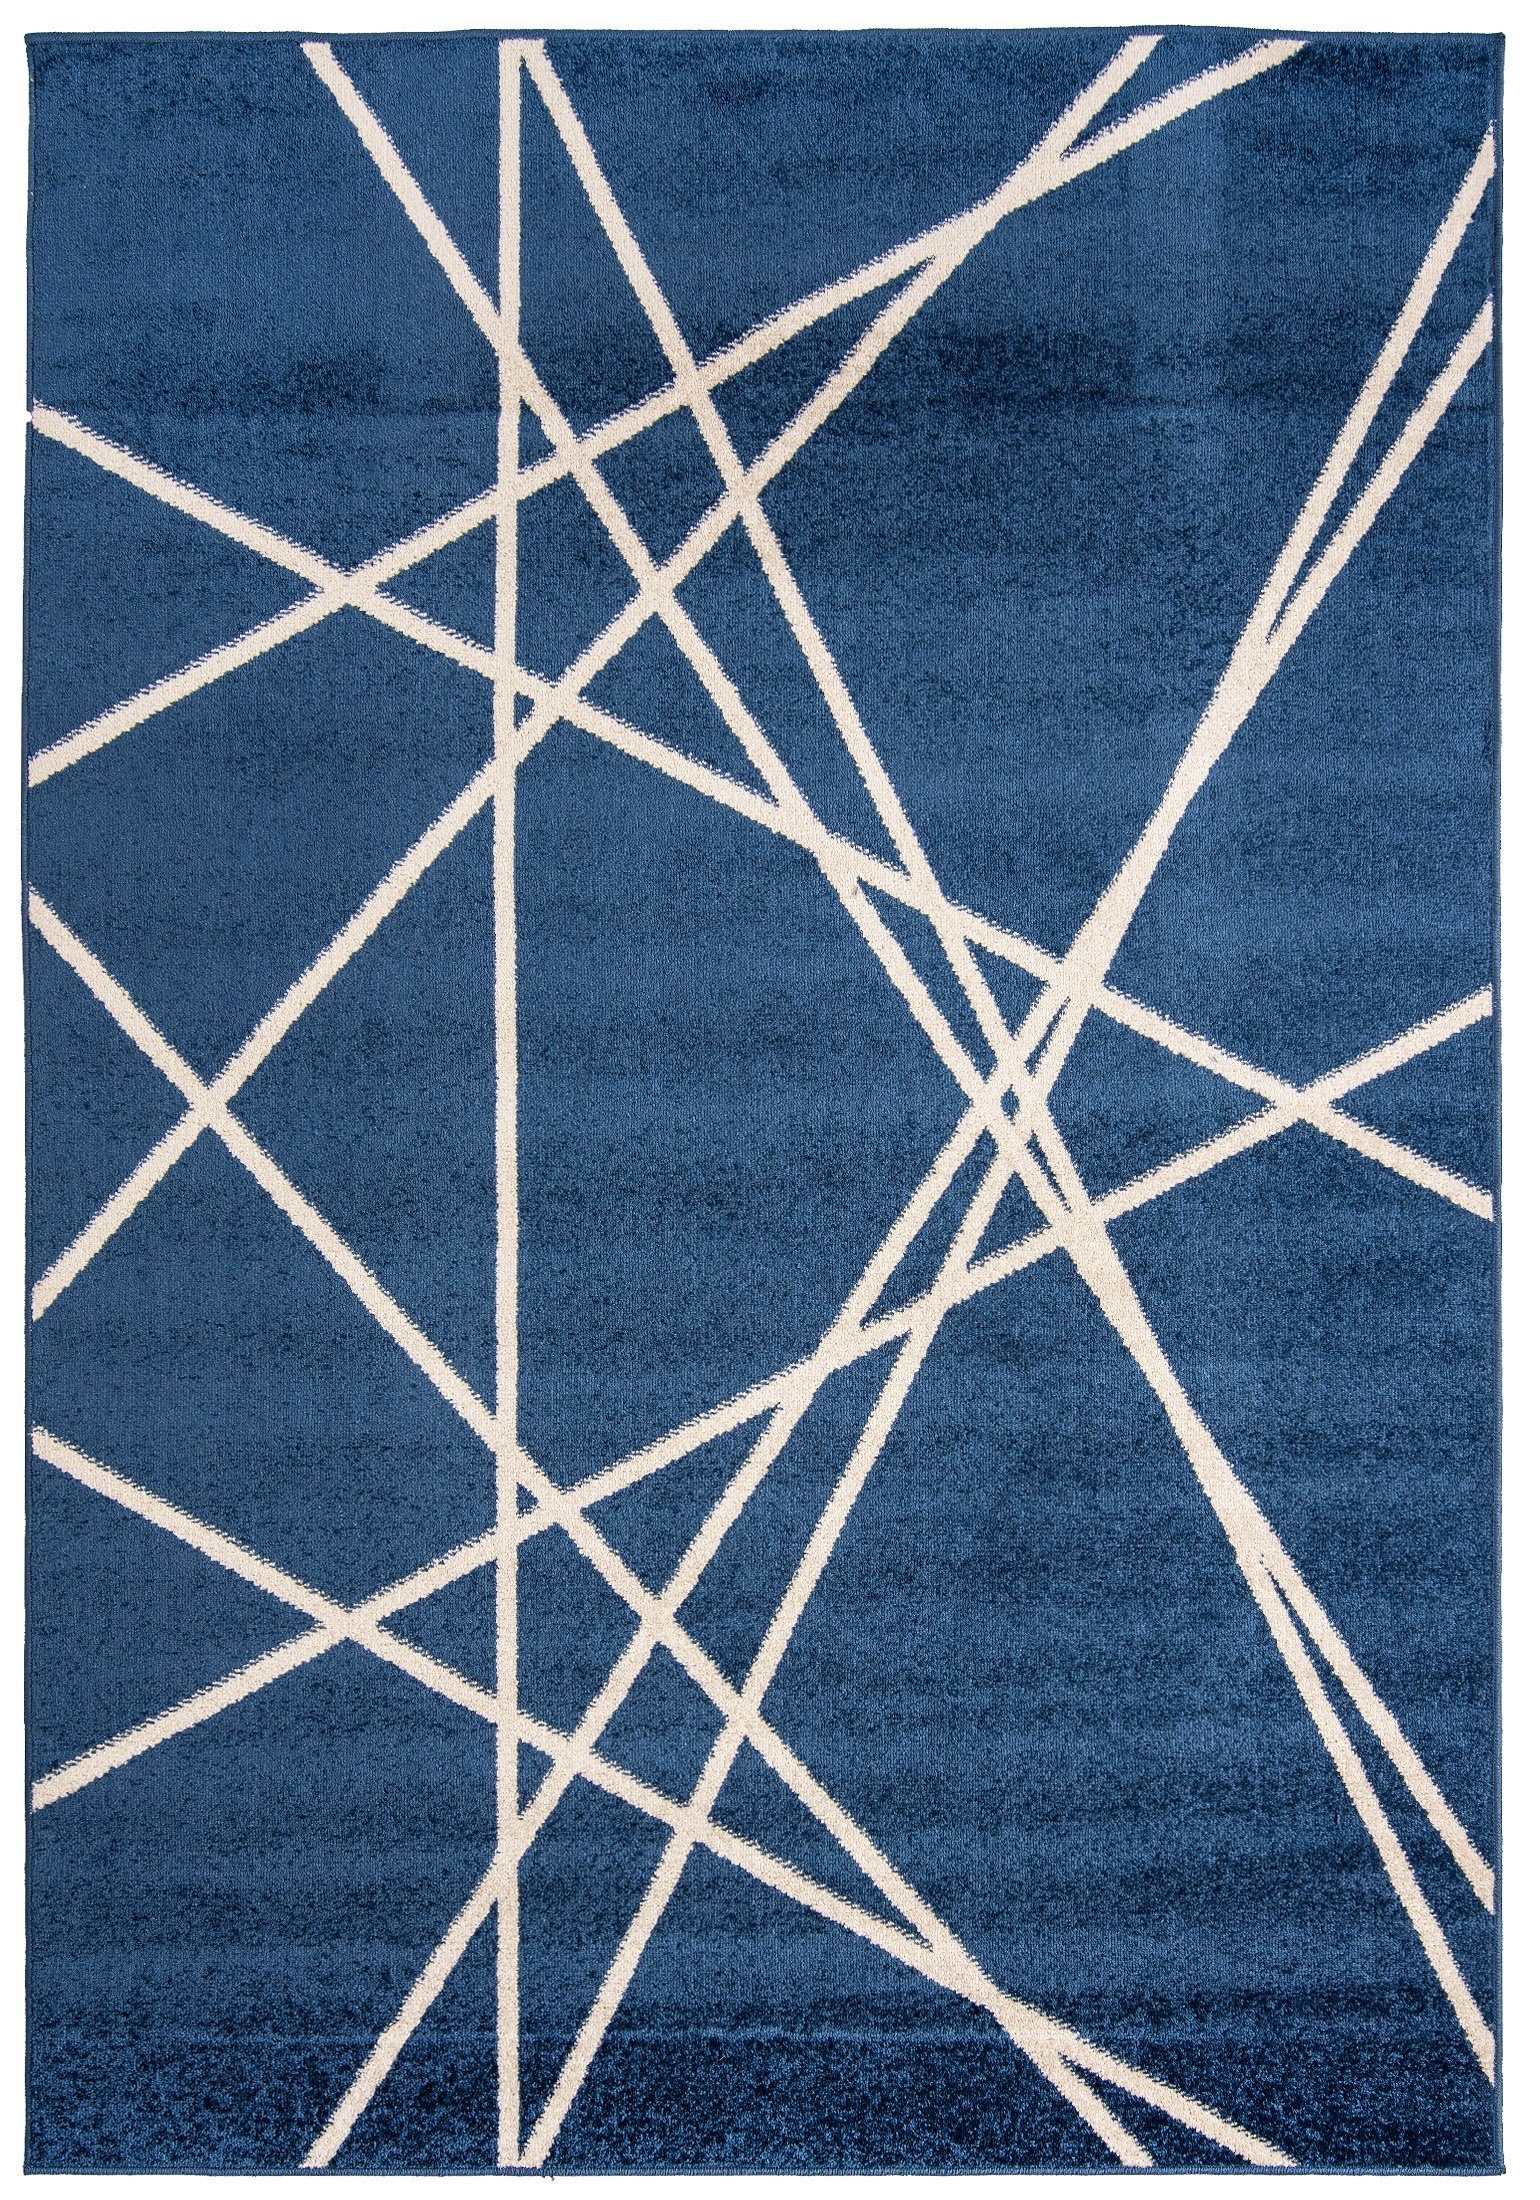 Designteppich Modern Teppich Geometrisch Muster Blau farbe - Kurzflor, Mazovia, 250 x 350 cm, Geeignet für Fußbodenheizung, Höhe 7 mm, Kurzflor